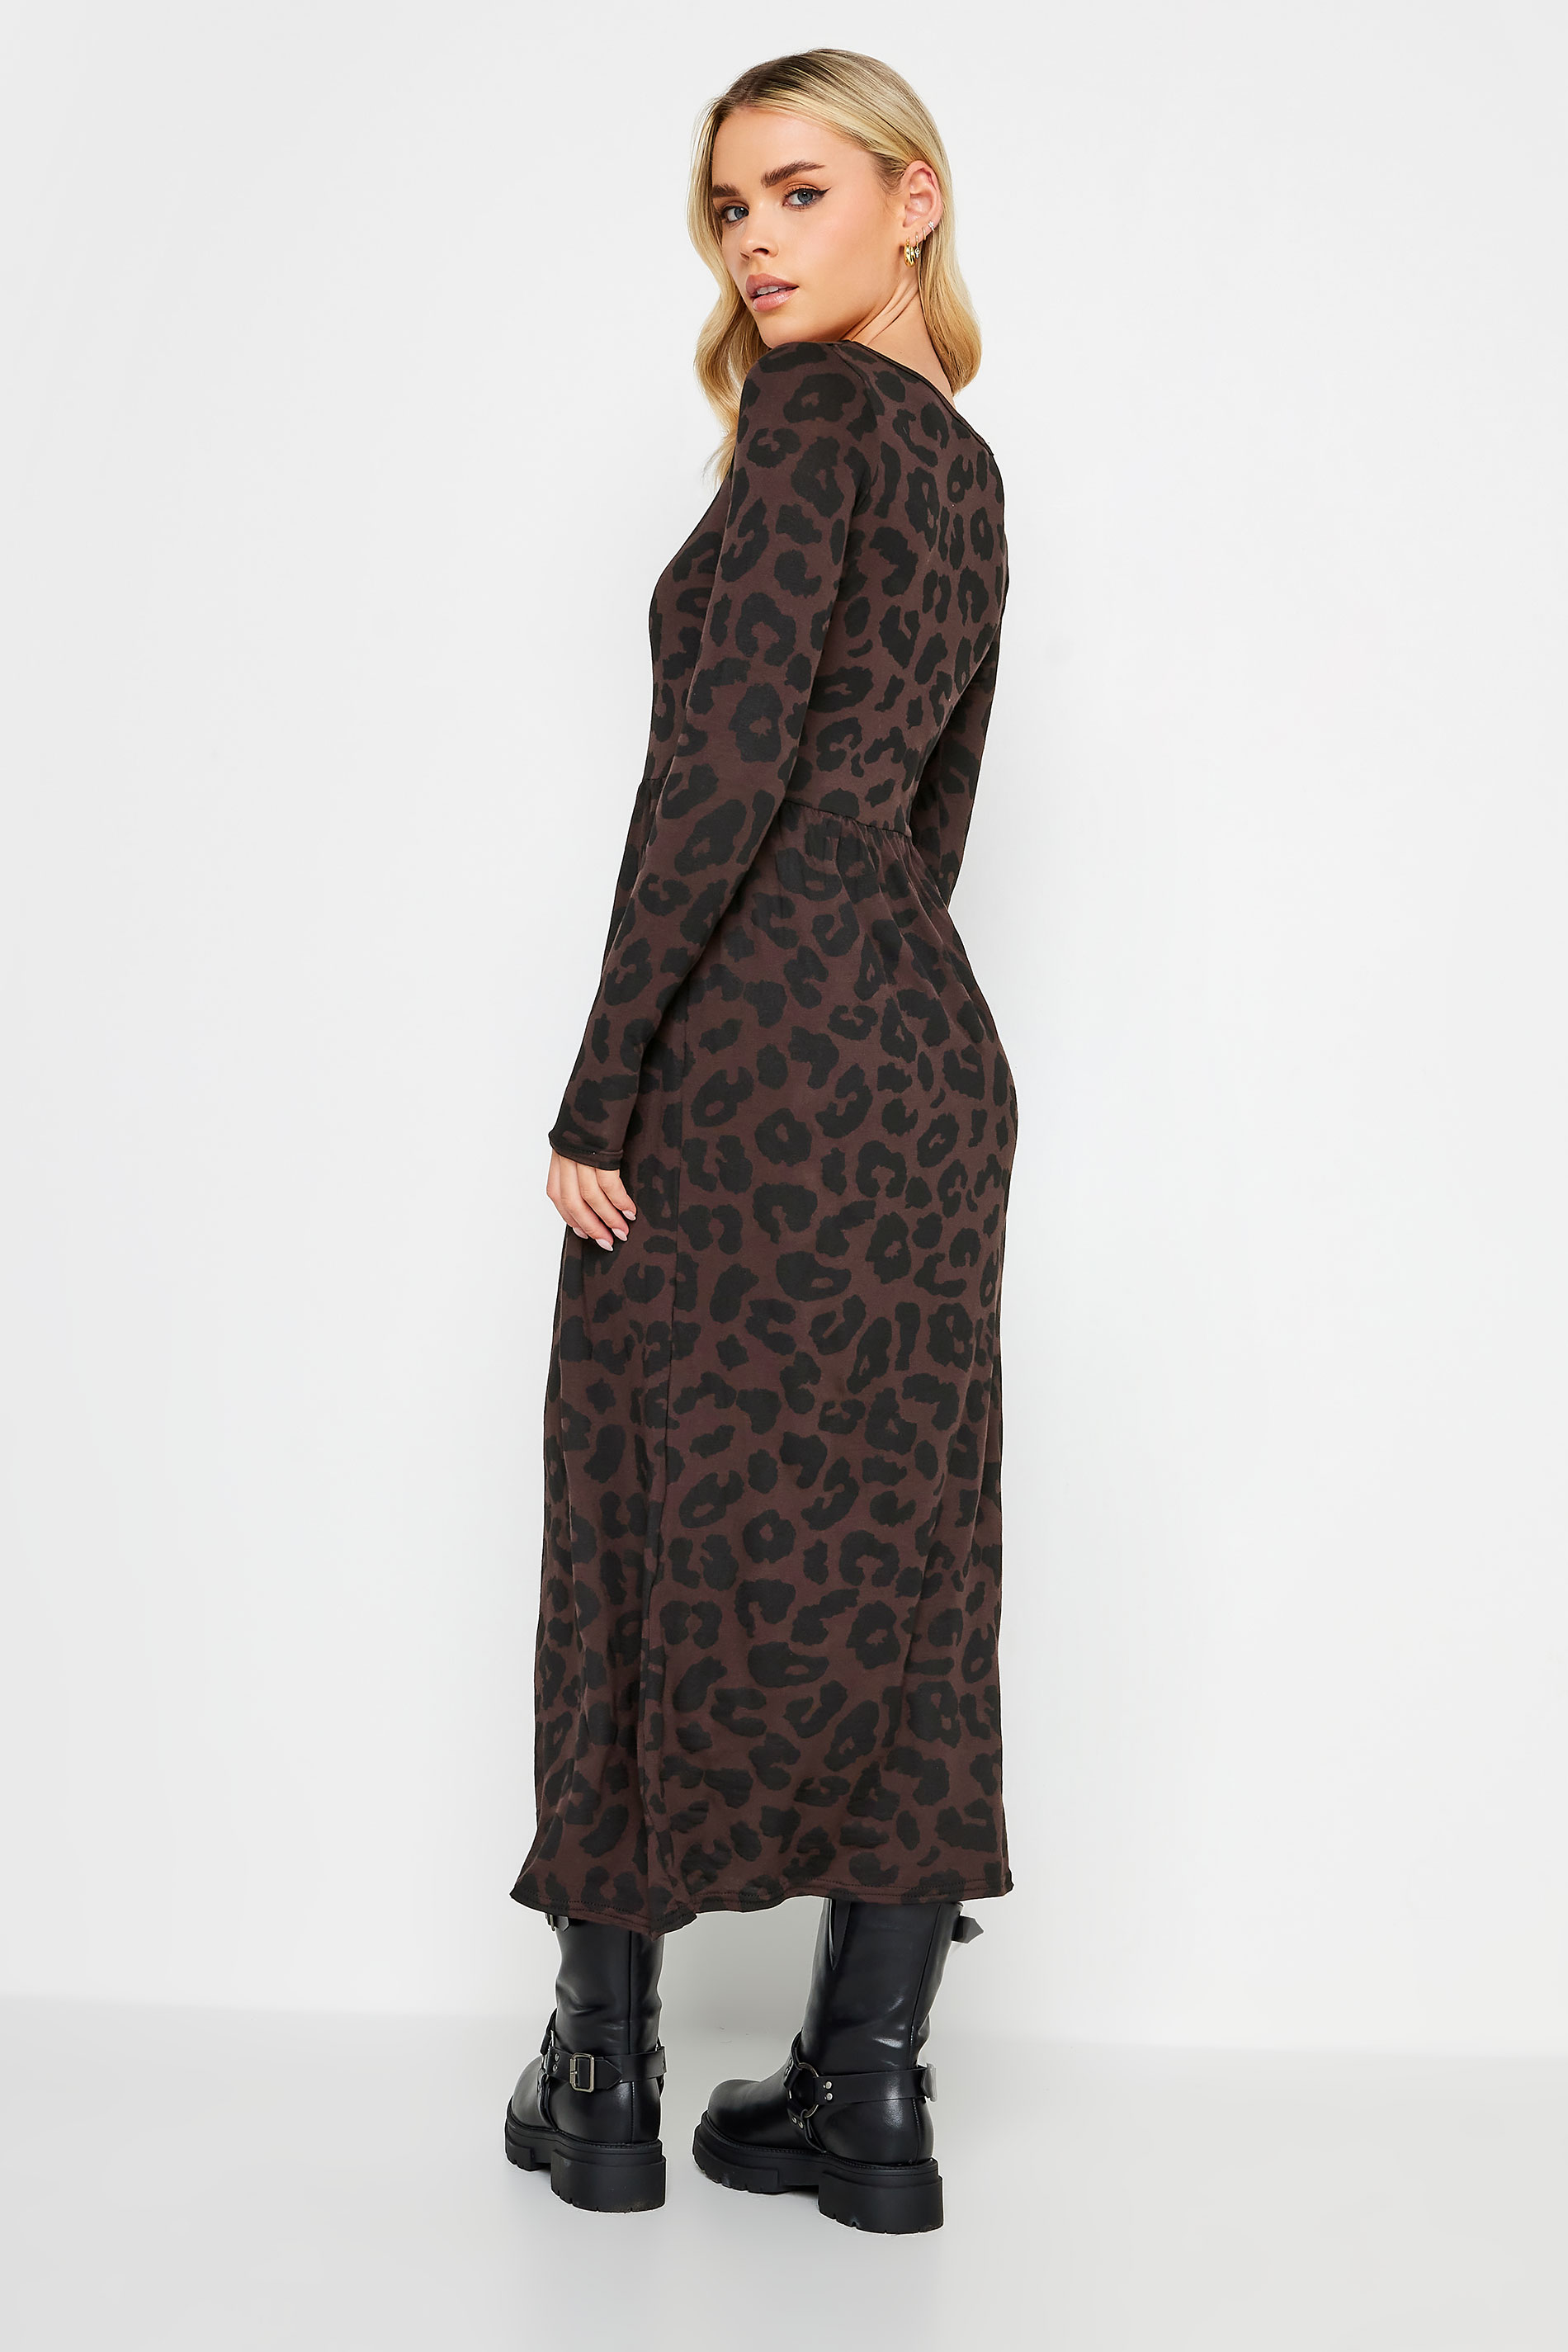 PixieGirl Petite Brown Leopard Print Long Sleeve Midi Dress | PixieGirl  3